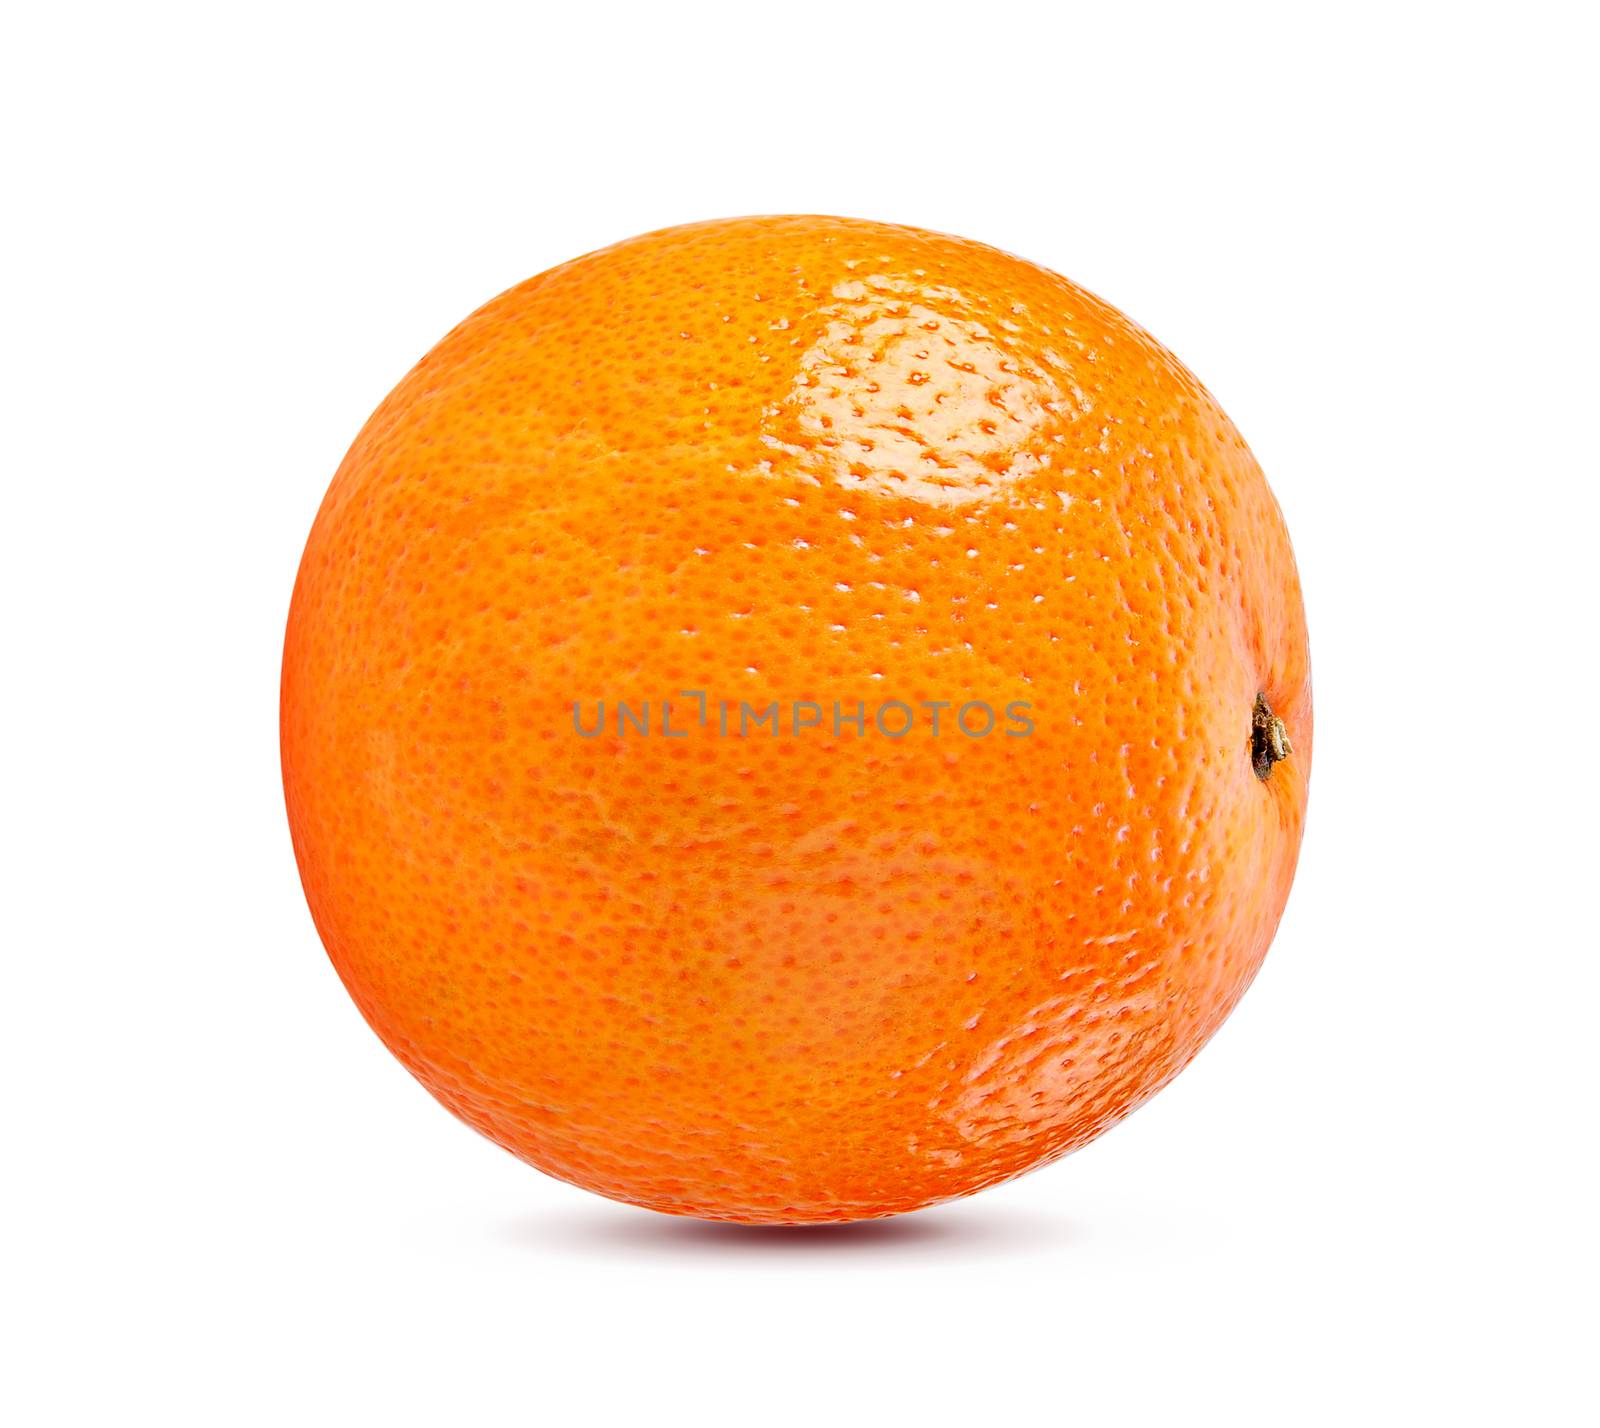 orange fruit isolated on white background by sommai